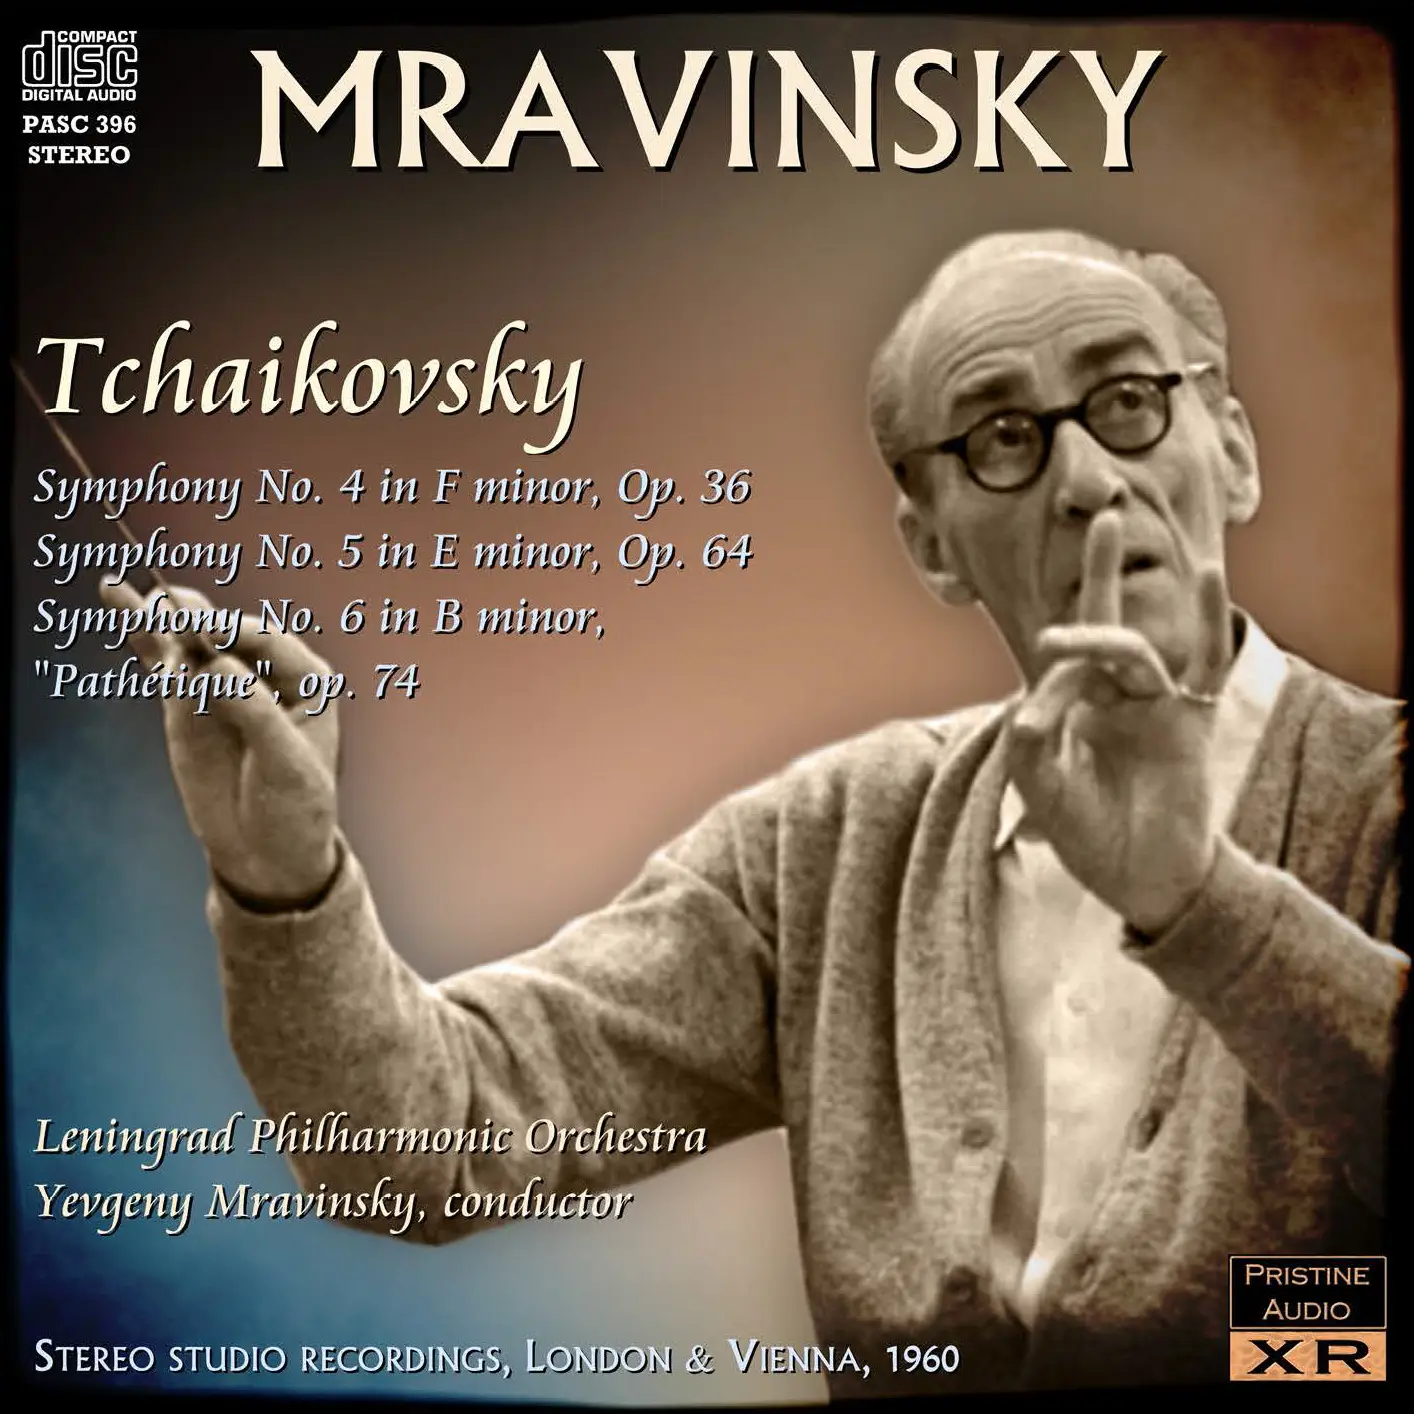 mravinsky tchaikovsky symphony 4 torrent